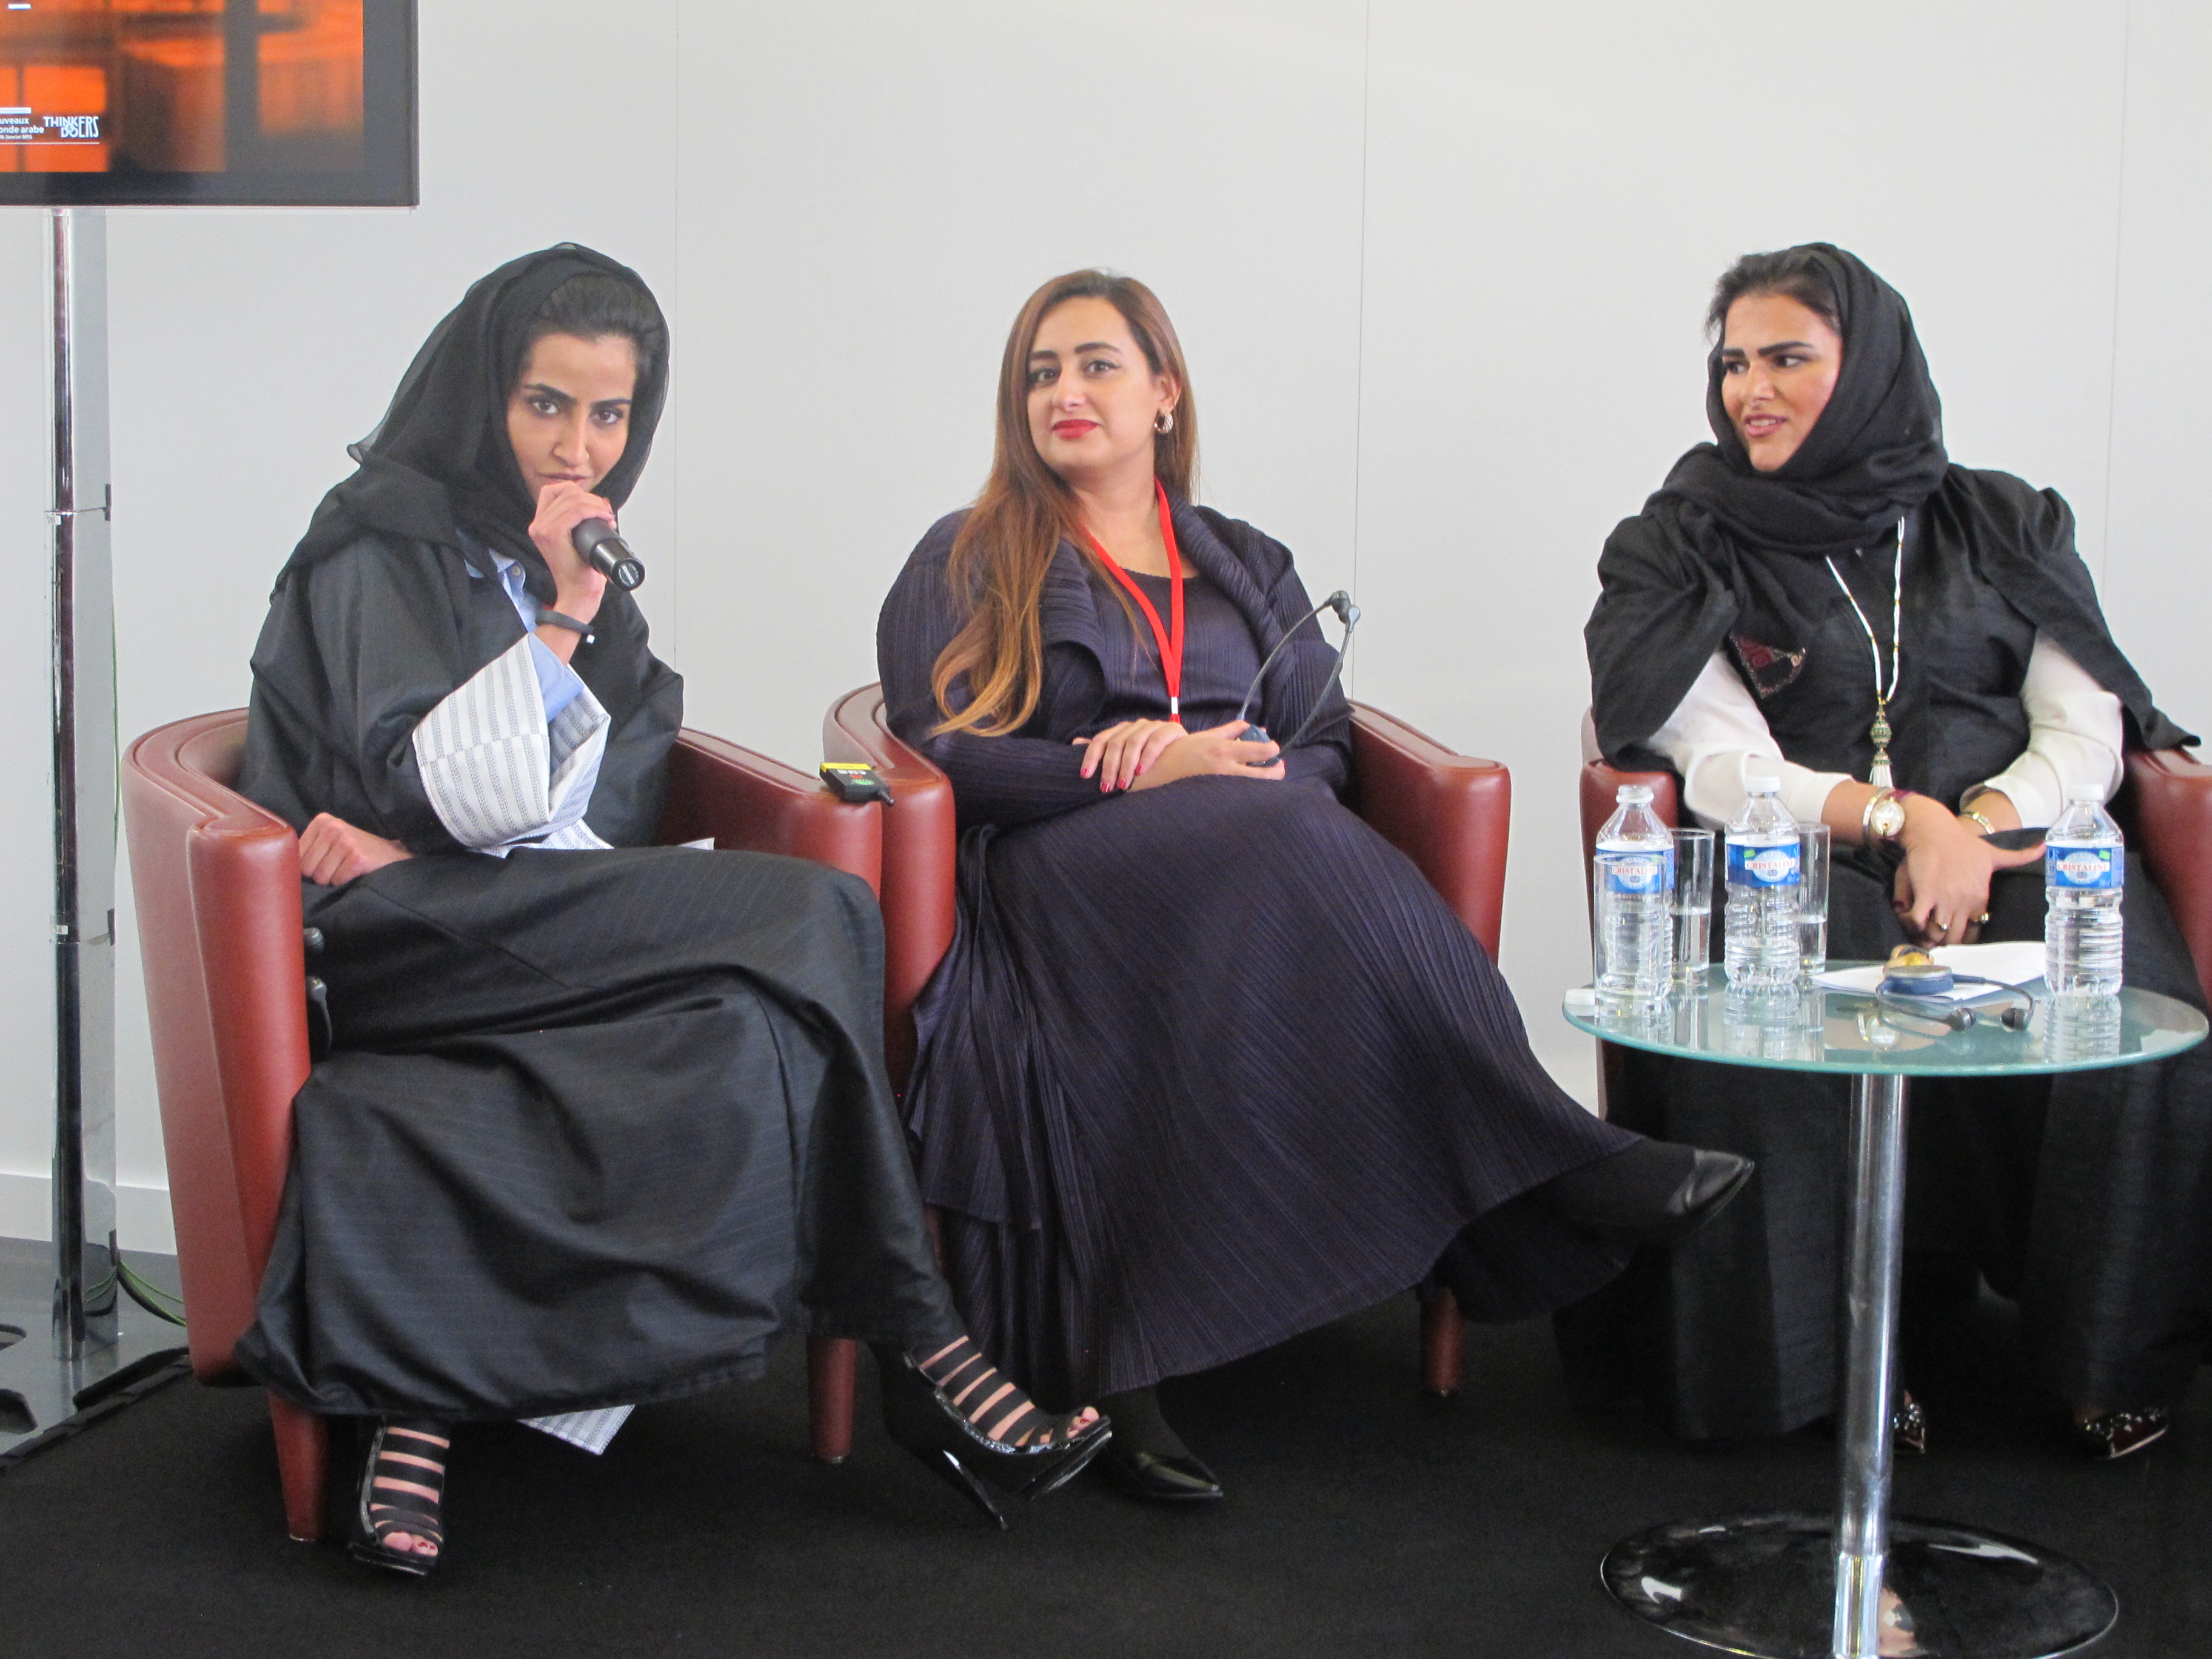 Arab Forum at IMA in Paris | Articles from Paris3648 x 2736